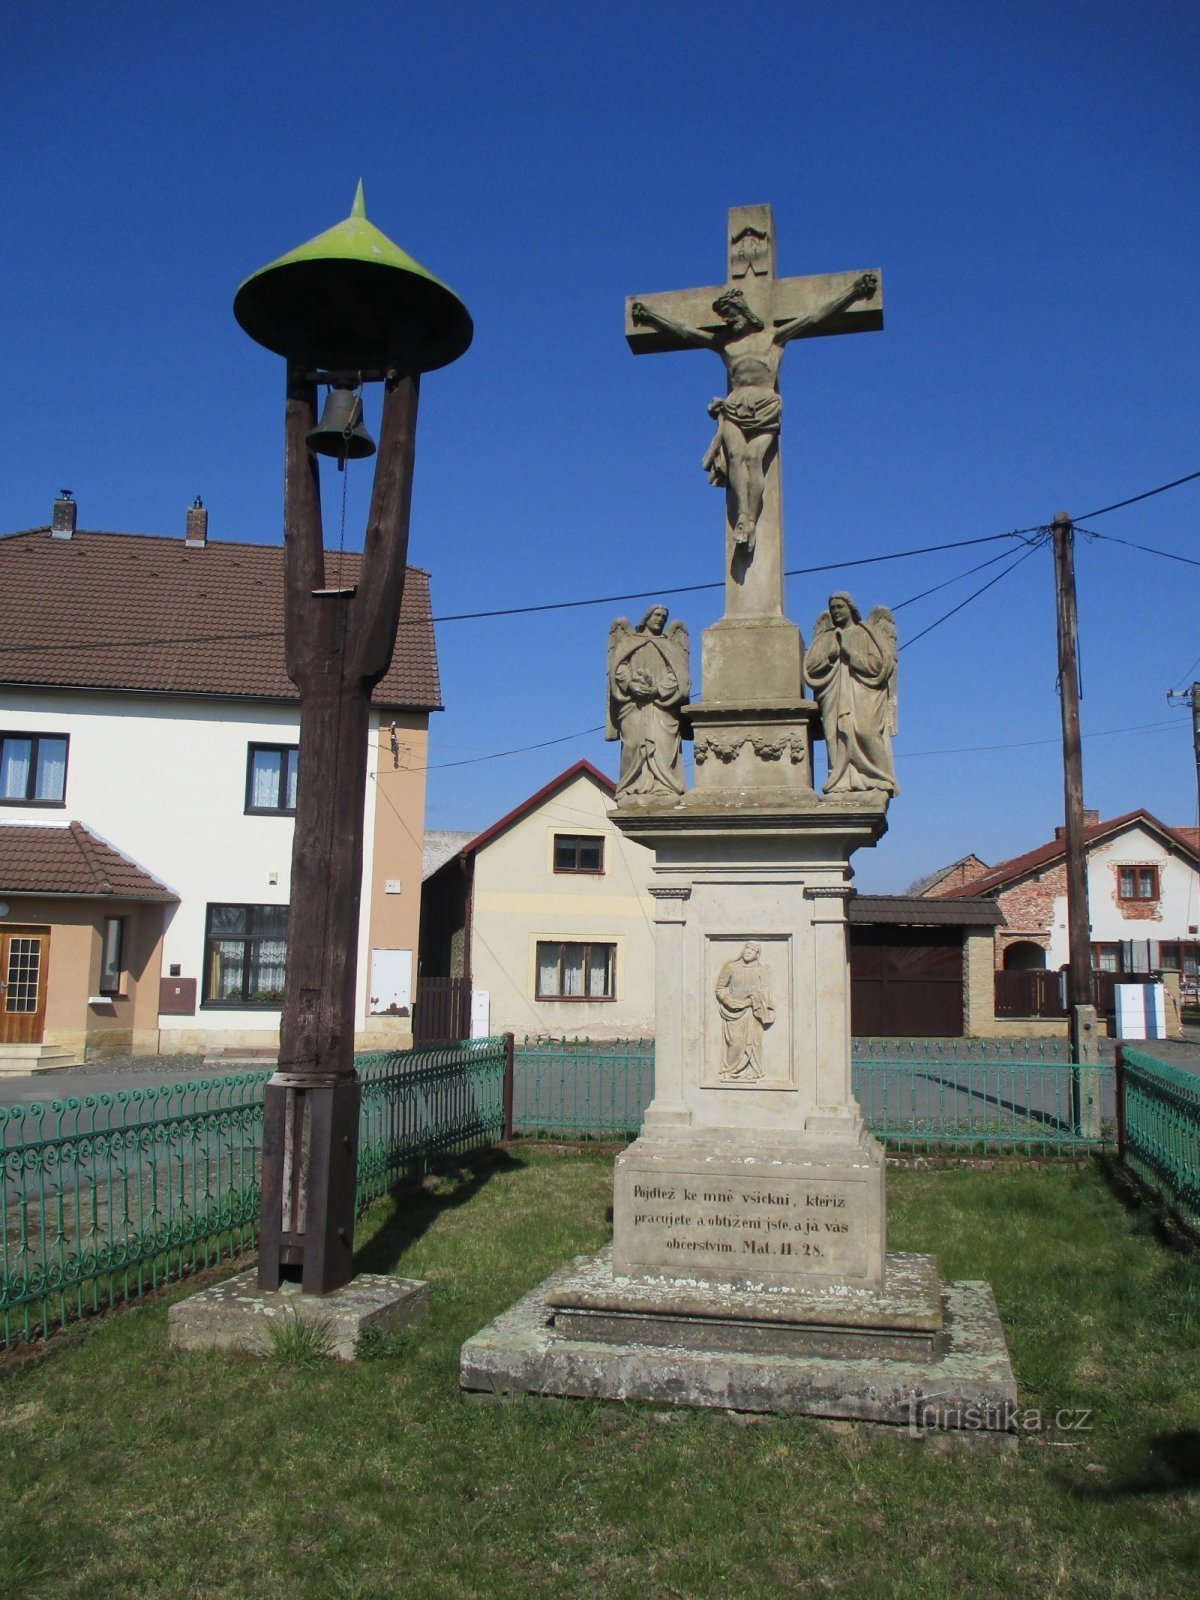 Колокольня с крестом (Рачице-над-Тротиной, 2.4.2020 апреля XNUMX г.)